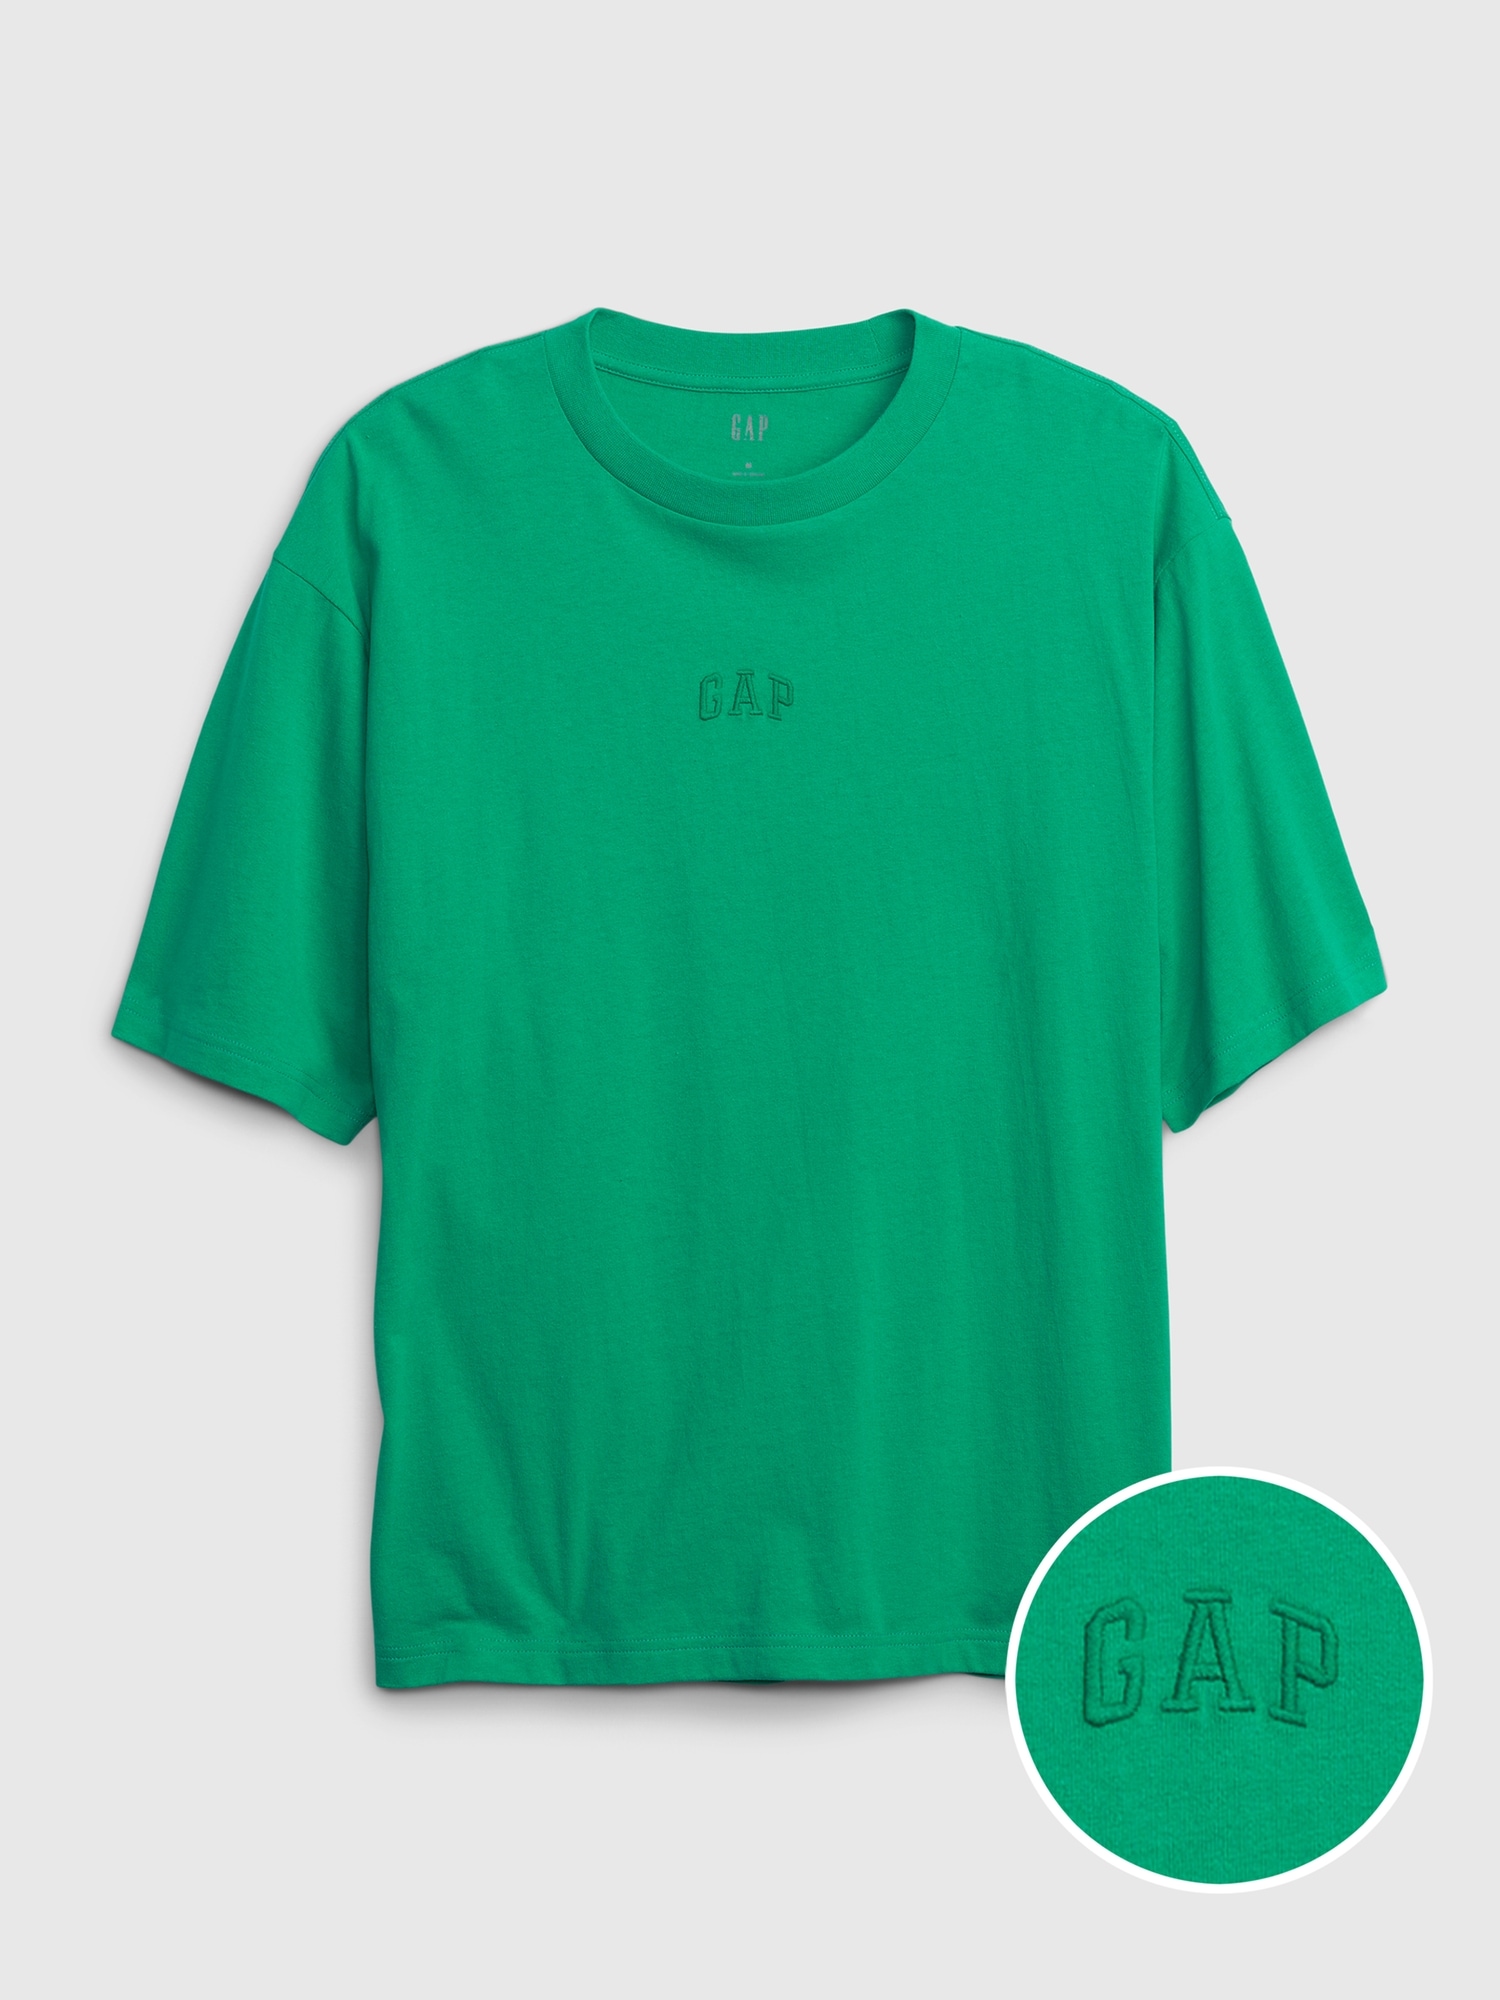 Gapロゴ ヘビーウェイト オーバーサイズ Tシャツ(ユニセックス)